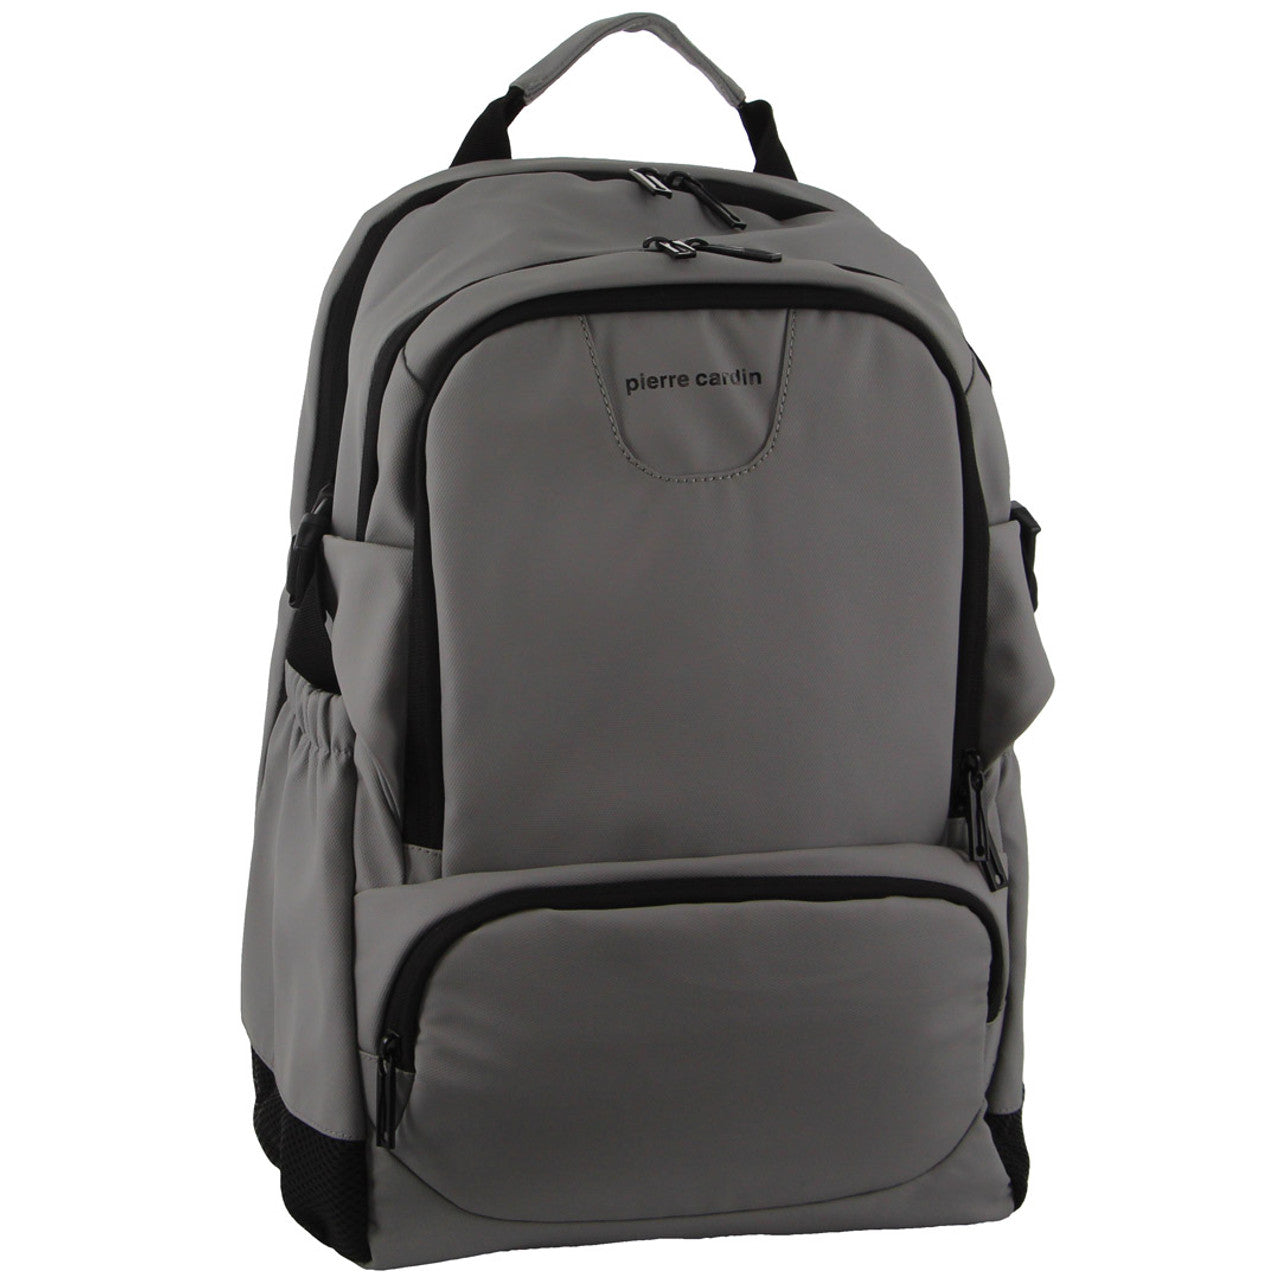 Pierre Cardin - PC3622 15in Laptop backpack w USB port - Grey-1